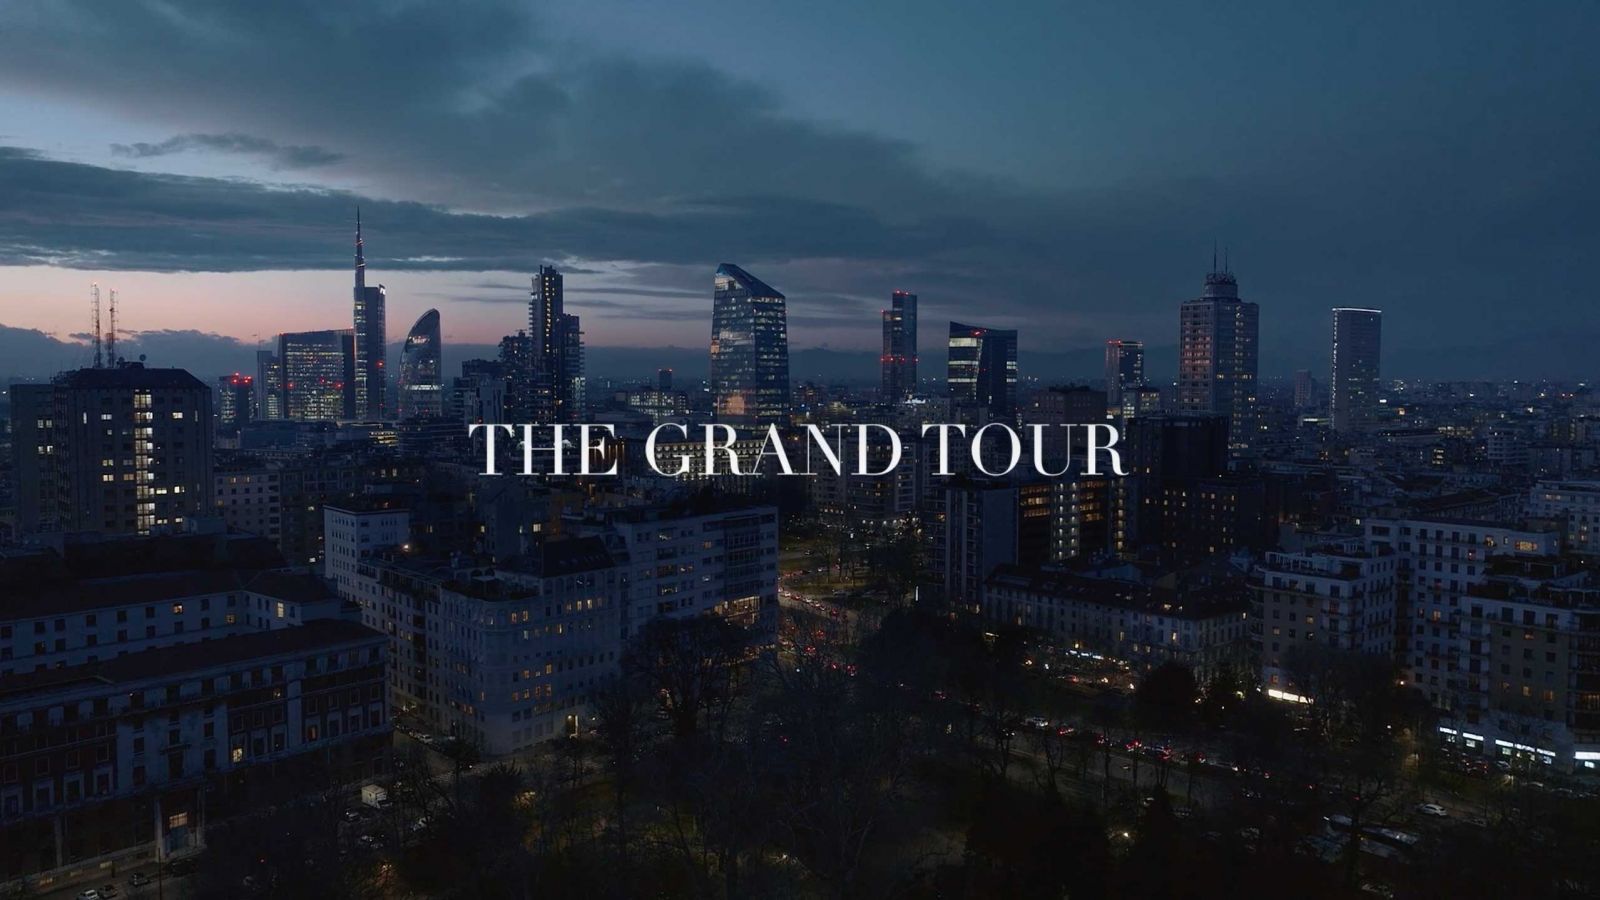 Titelbild zum Film «The Grand Tour» von Minotti. Der Link führt zu Youtube.